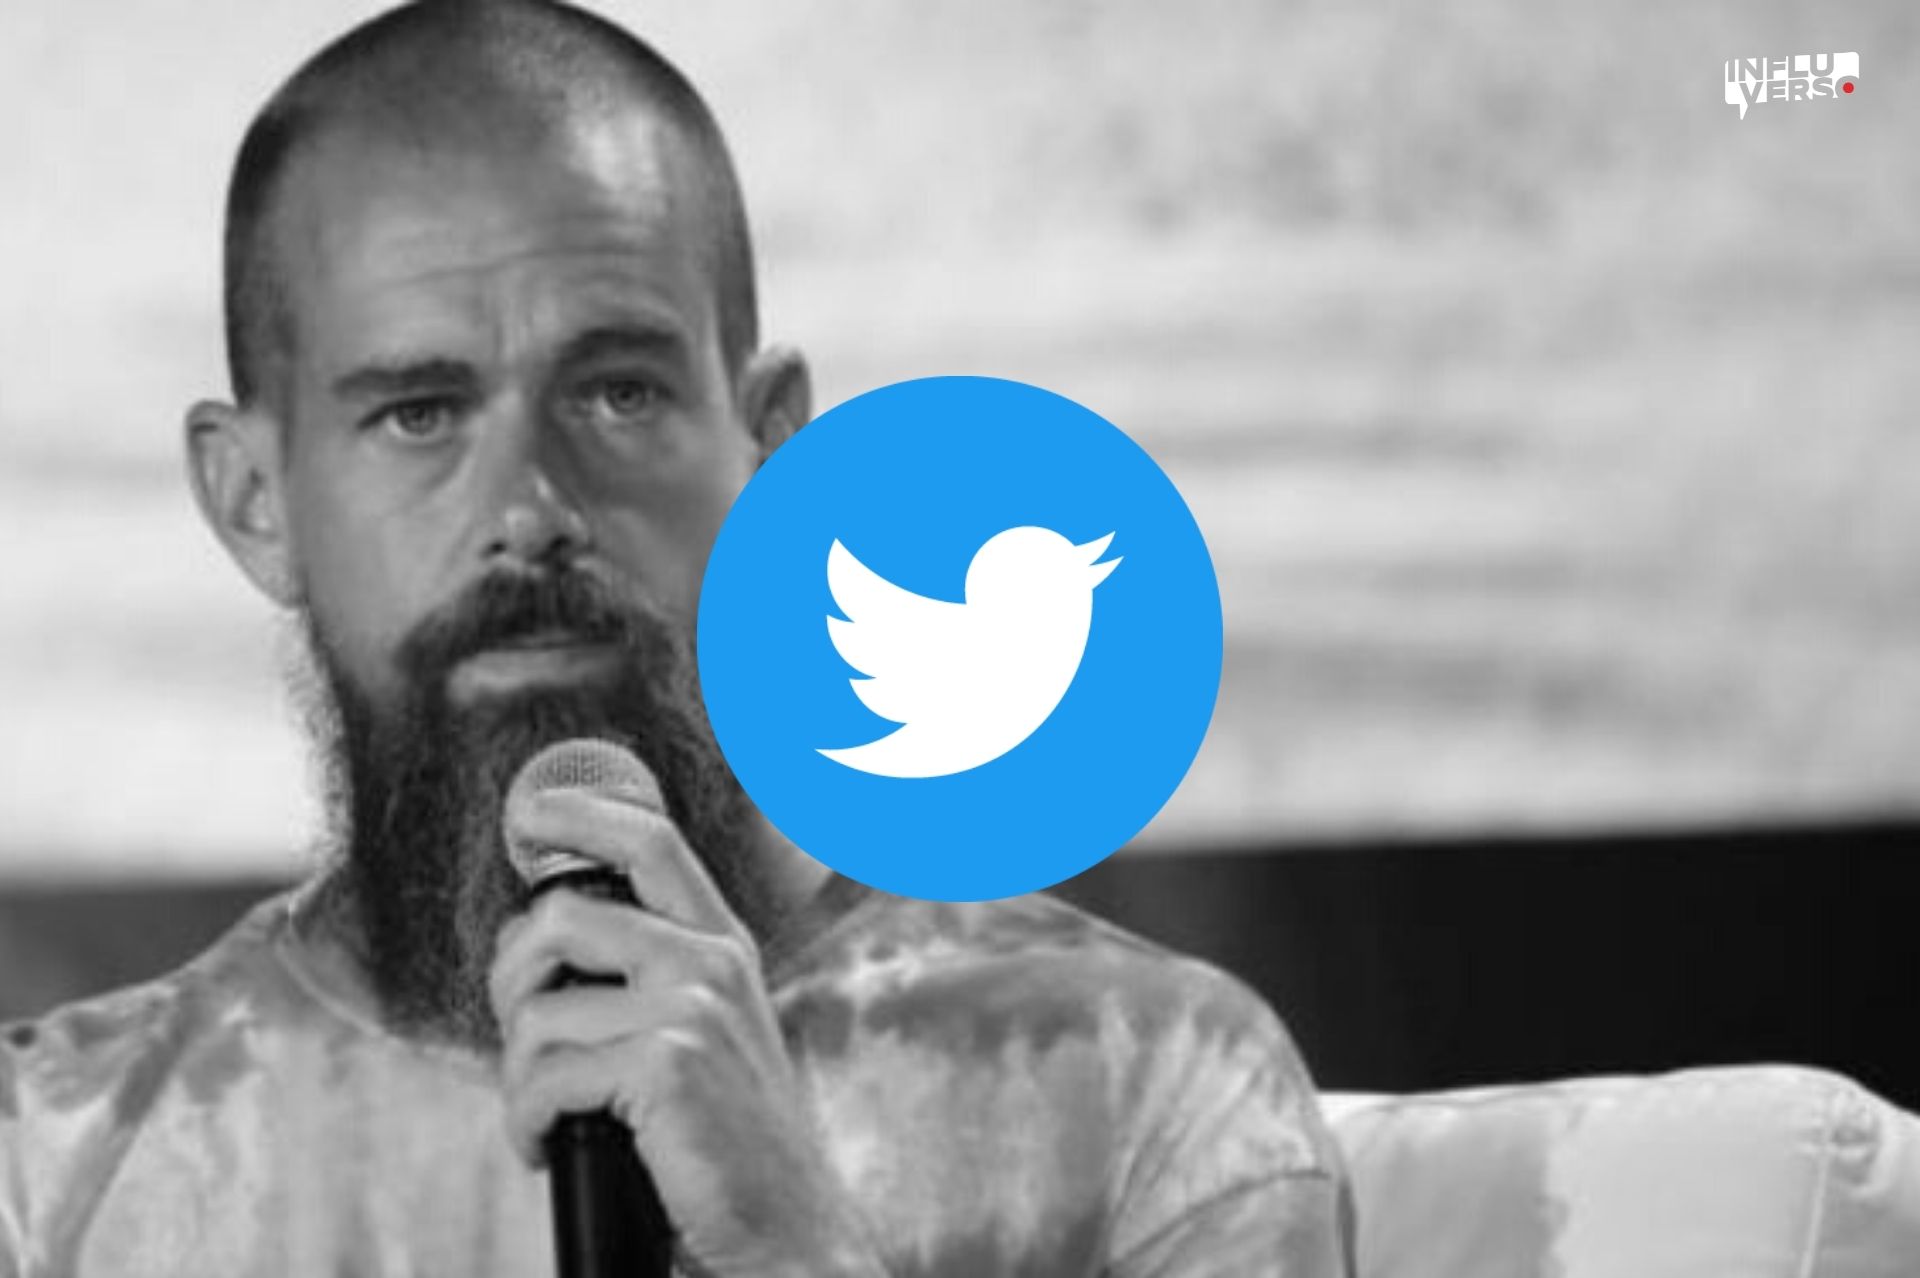 CEO de Twitter renuncia, Twitter rentabilidad, Jack Dorsey